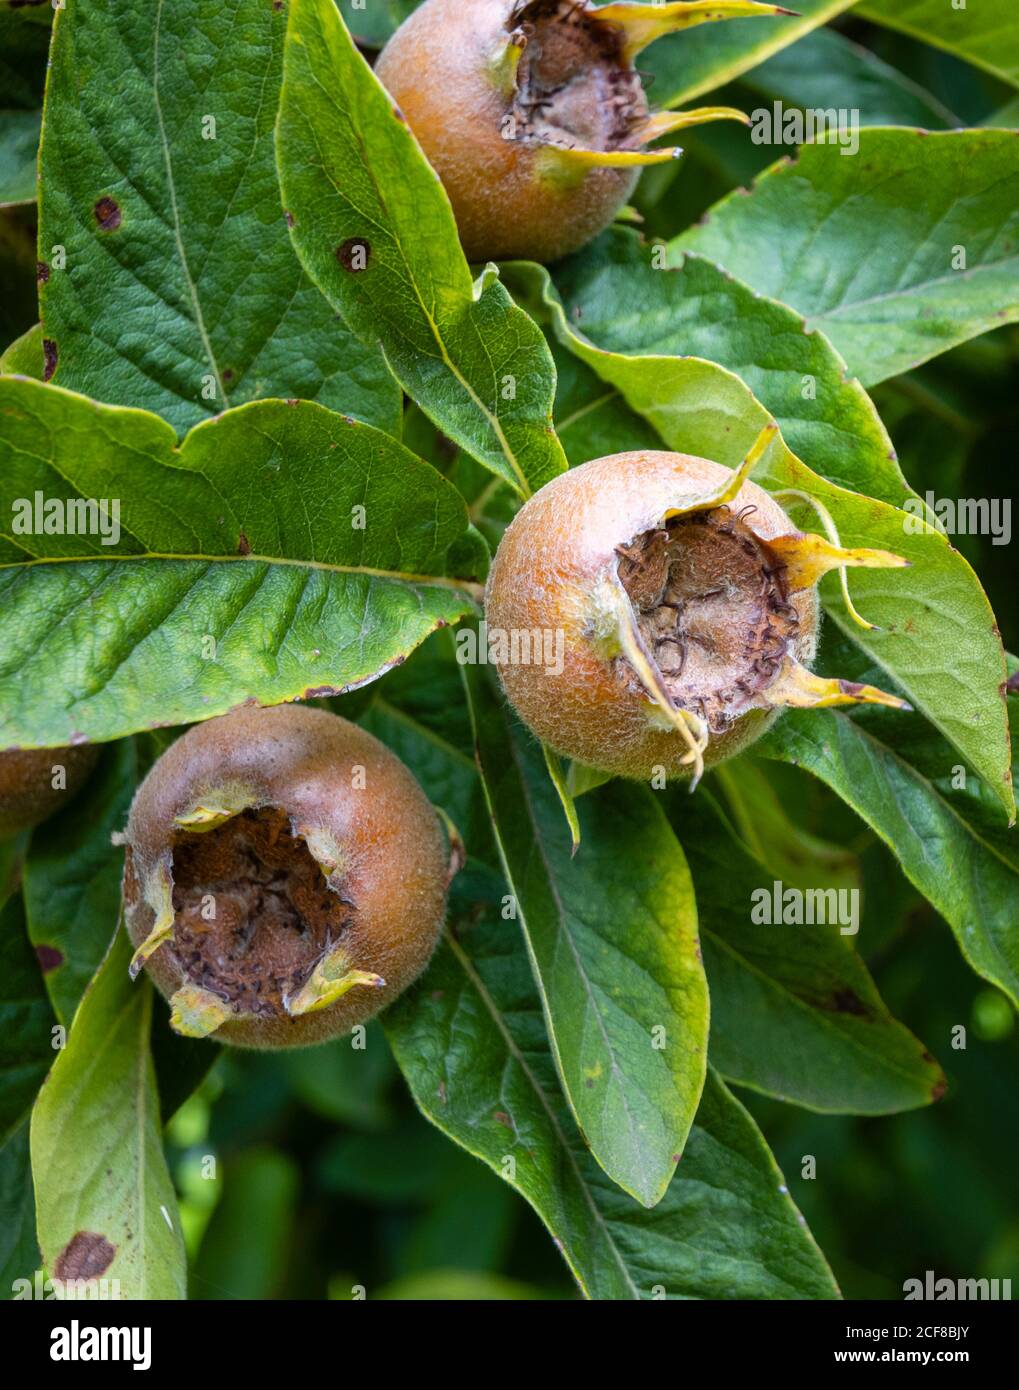 Frutos comestibles del medlar (Mespilus germanica) a finales del verano y principios del otoño, creciendo en Hampshire, sur de Inglaterra Foto de stock